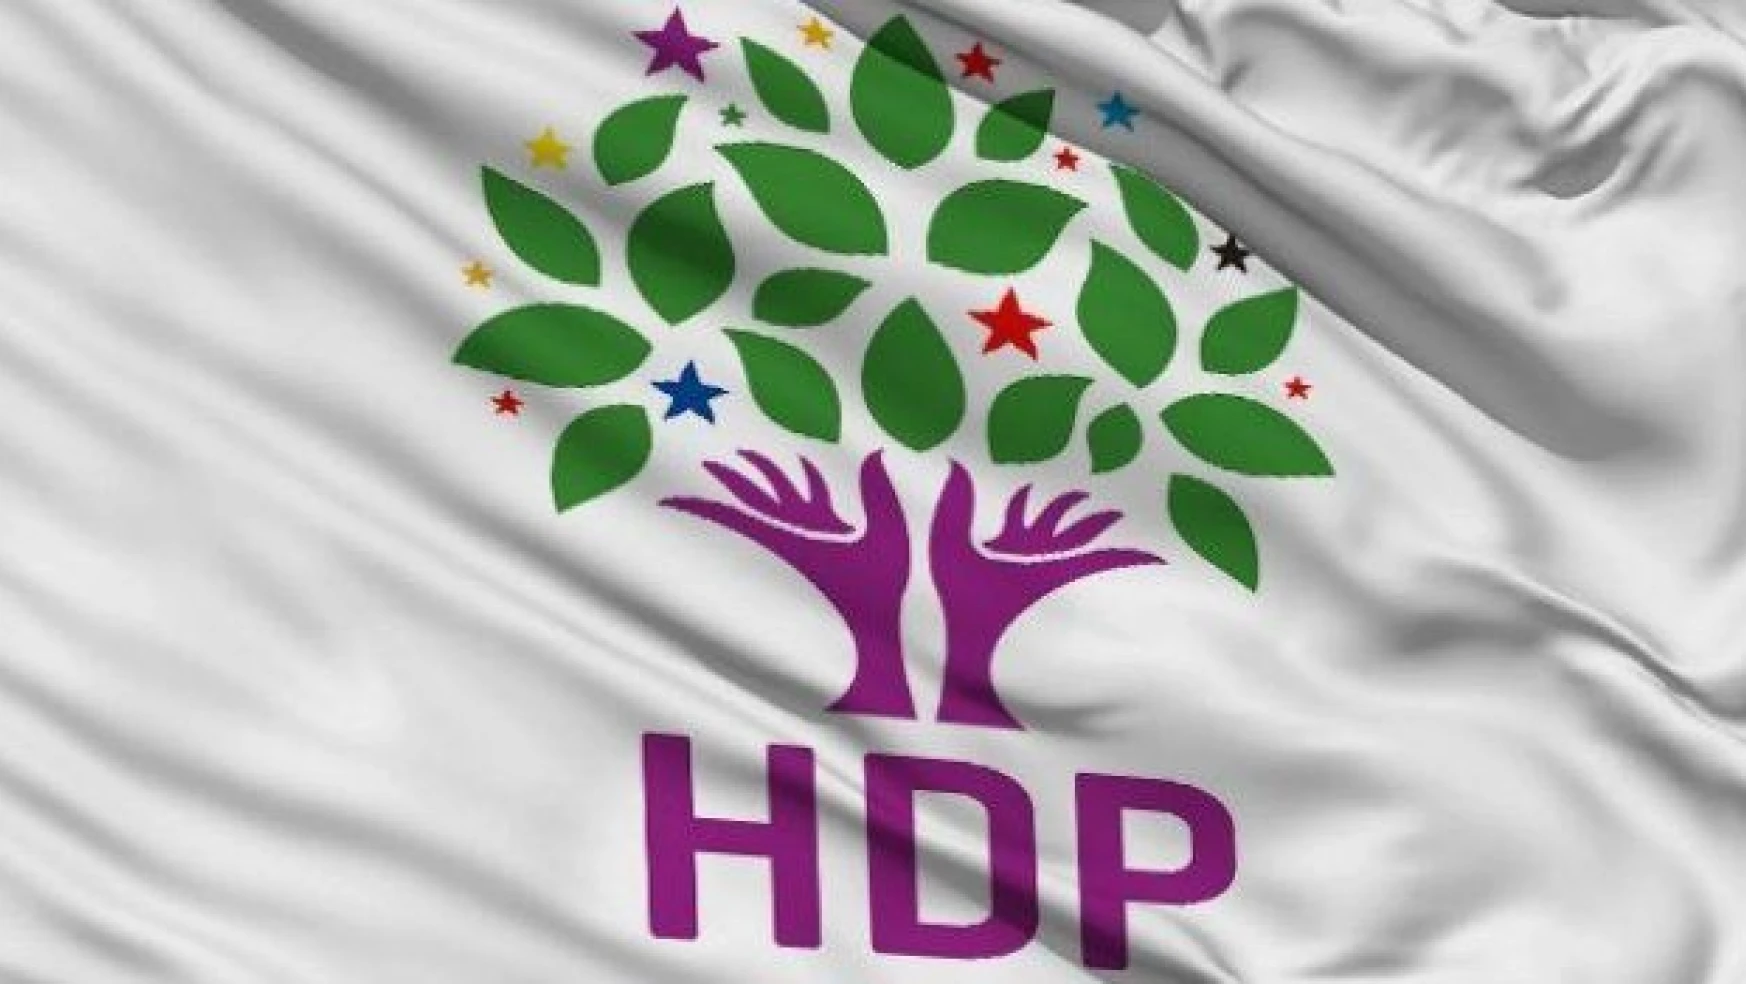 HDP'liler için 'dokunulmazlık' formülü: DOKUN AMA TUTUKLAMA!